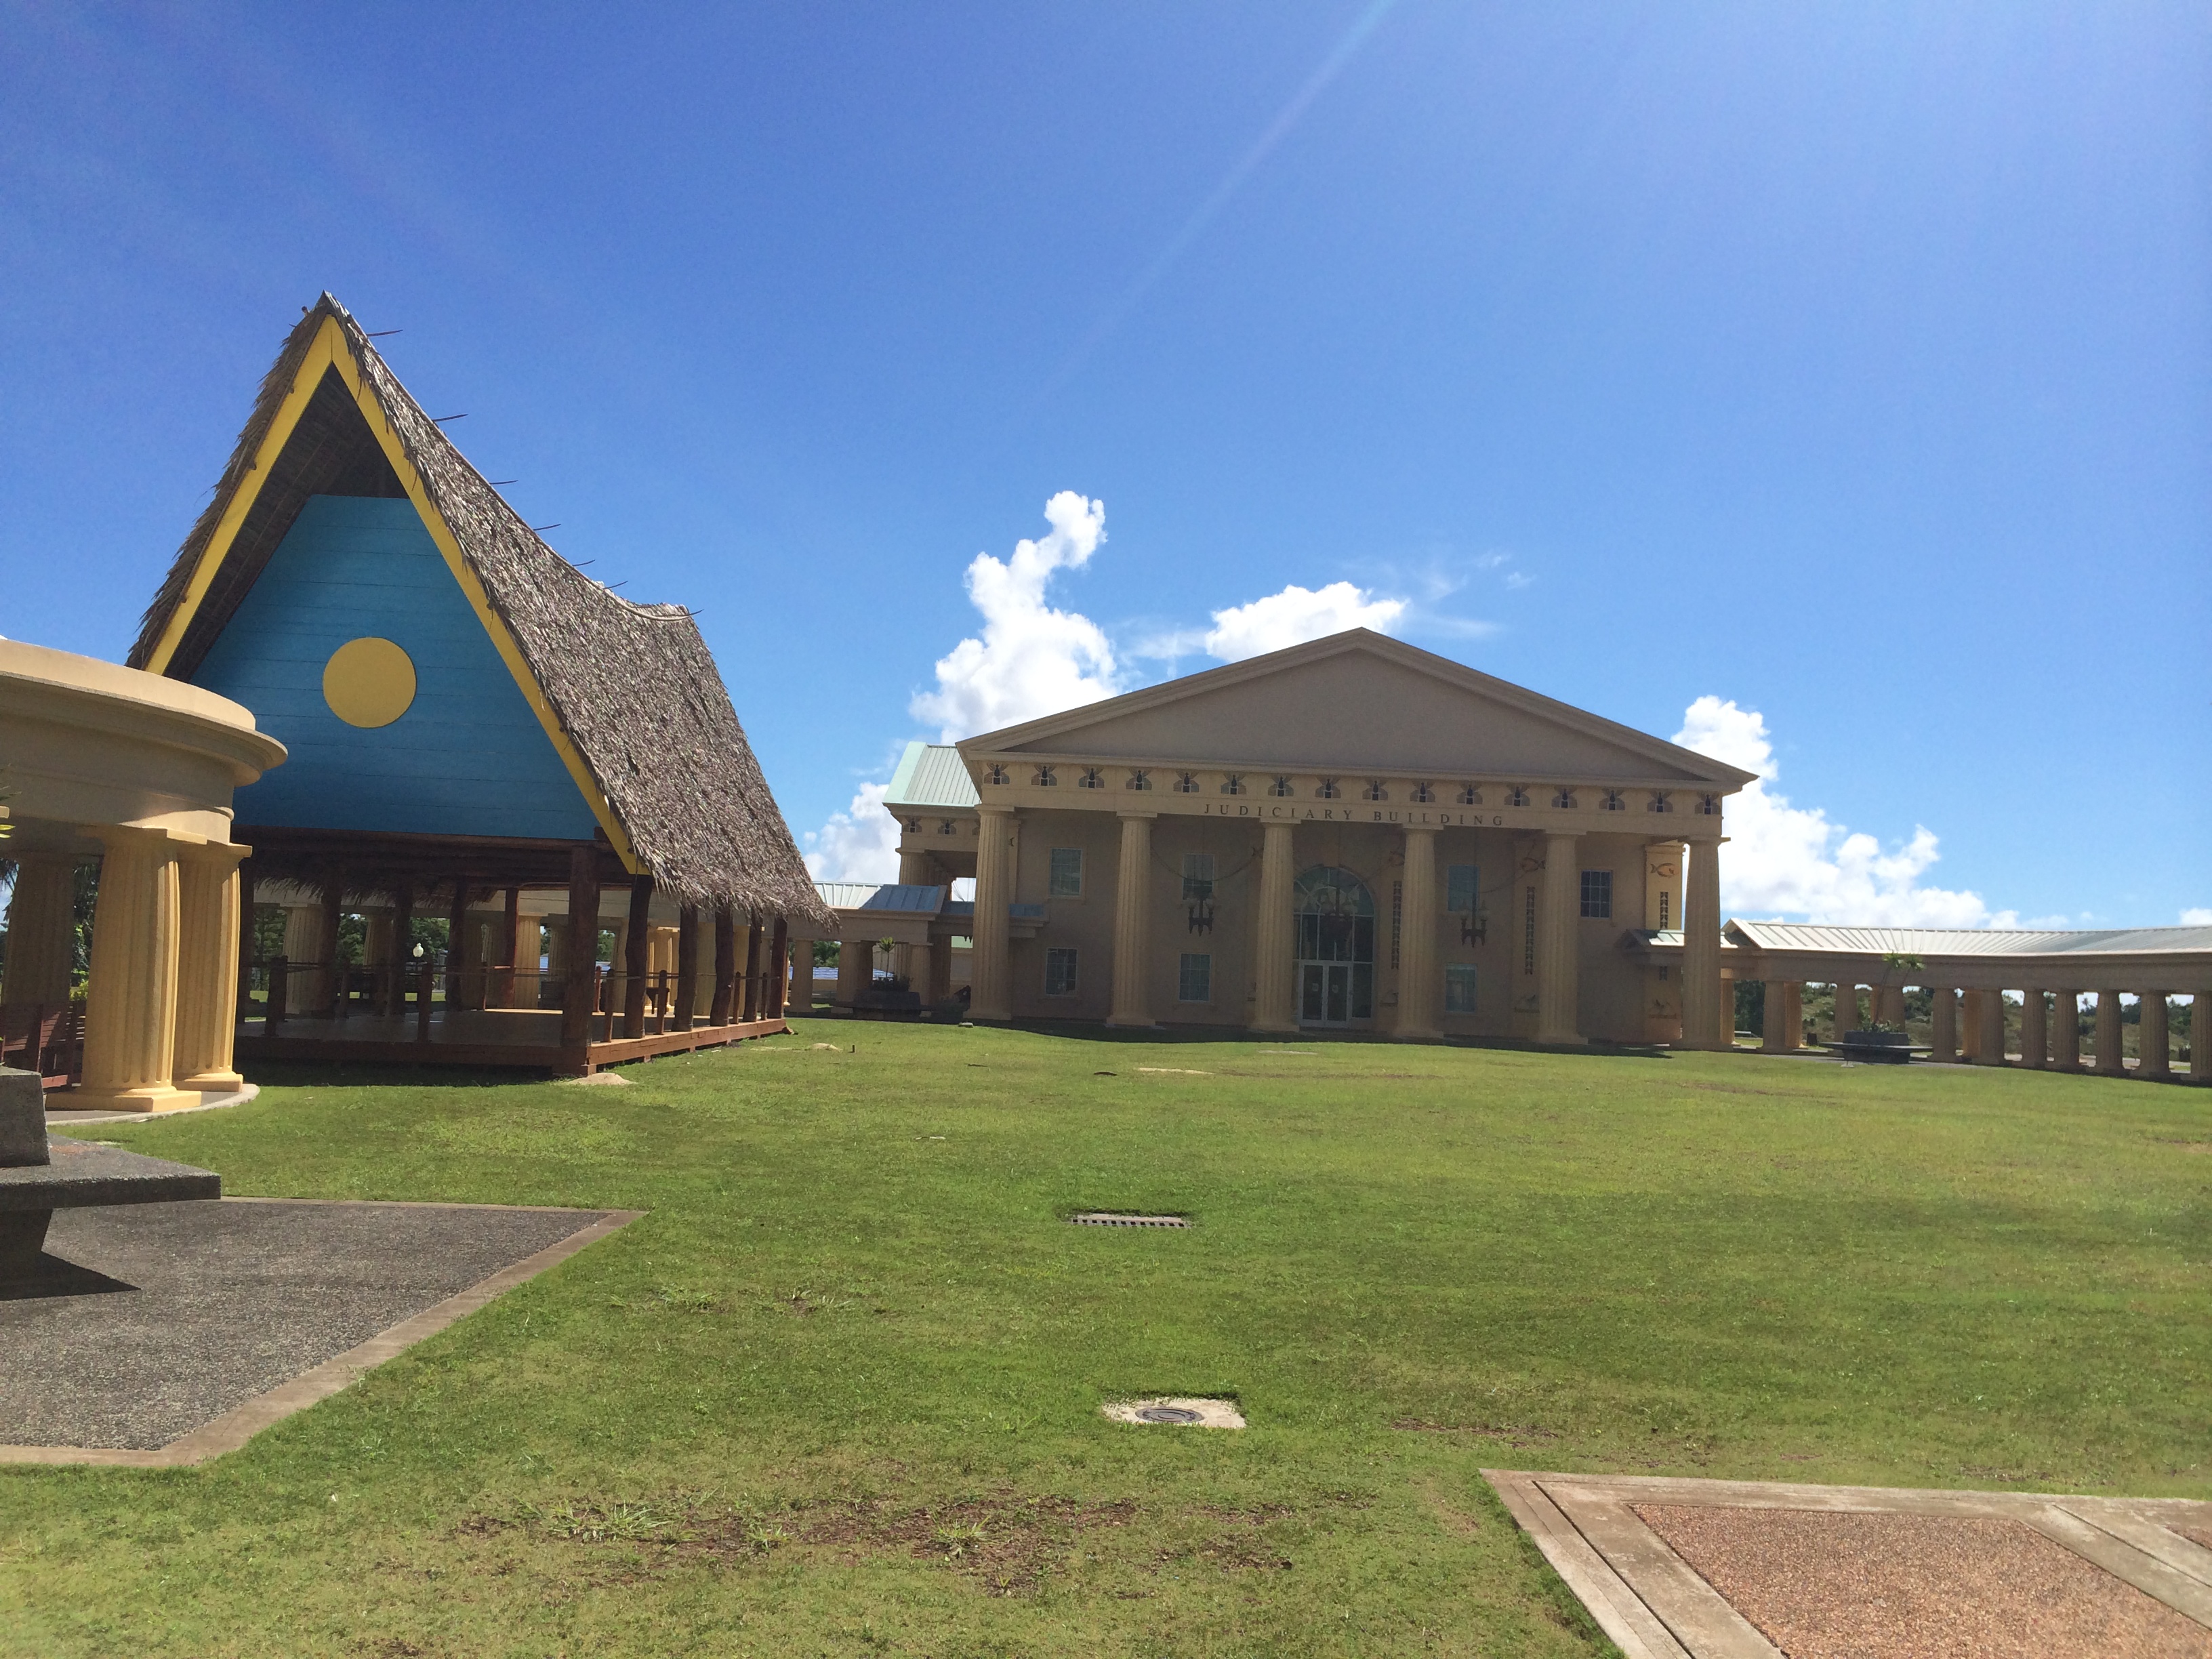 2006年10月之后,帕劳新首都迁往位于帕劳本岛的梅莱凯奥克州